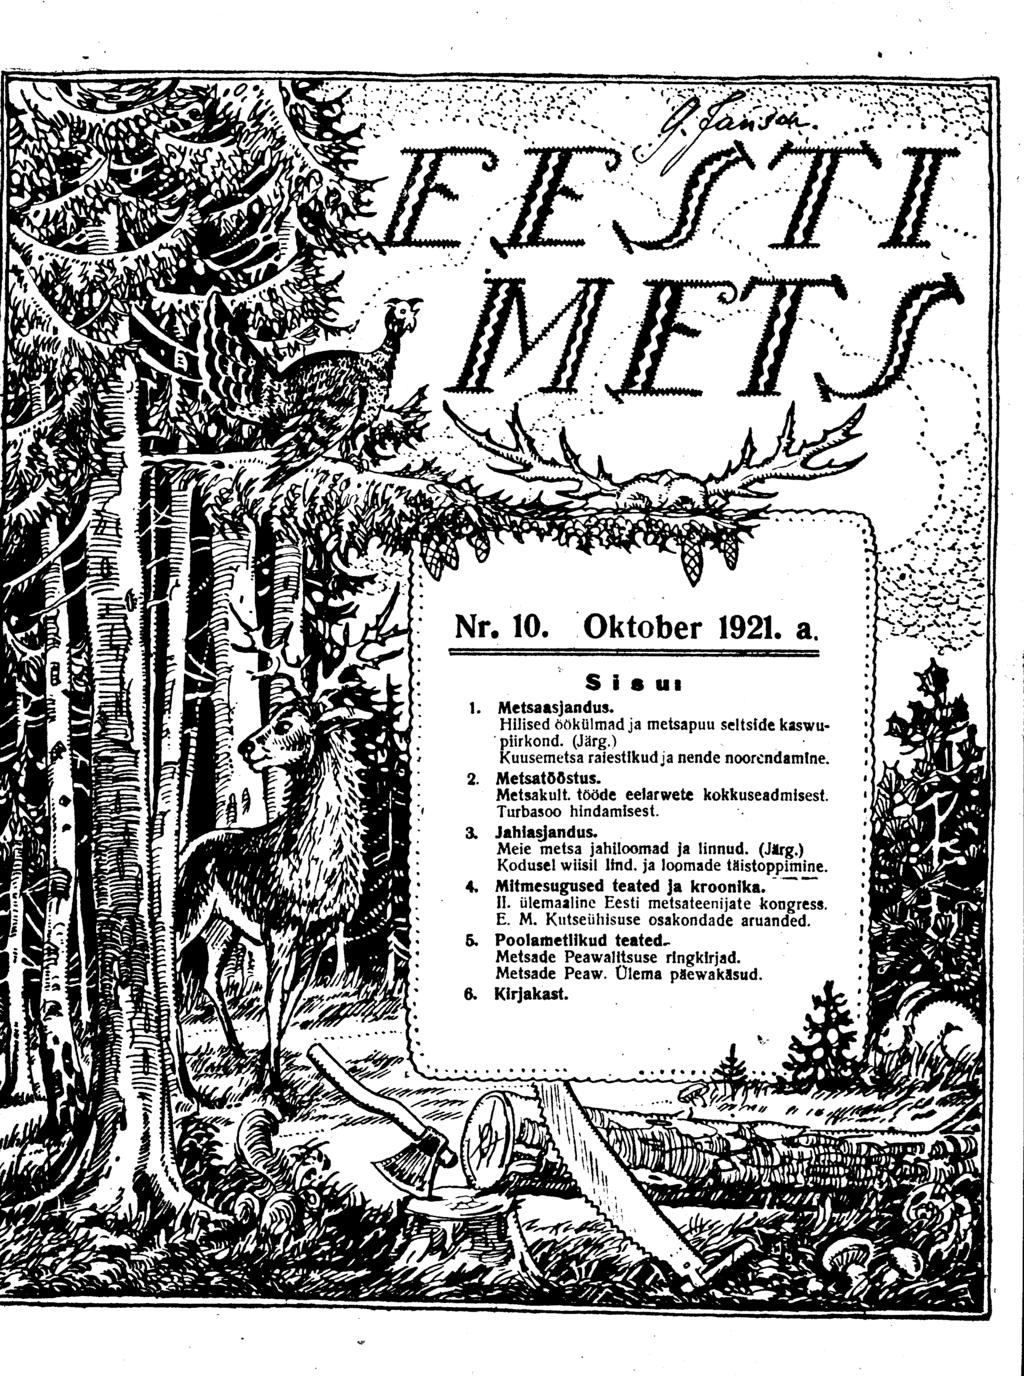 TV MNL JM S-v Nr. 10. Oktober 1921. a. S i s ui 1. Metsaasjandus. Hilised öökülmad ja metsapuu seltside kaswu* piirkond. (Järg.) Kuusemetsa raiestikud ja nende noorendamine. 2. Metsatööstus.